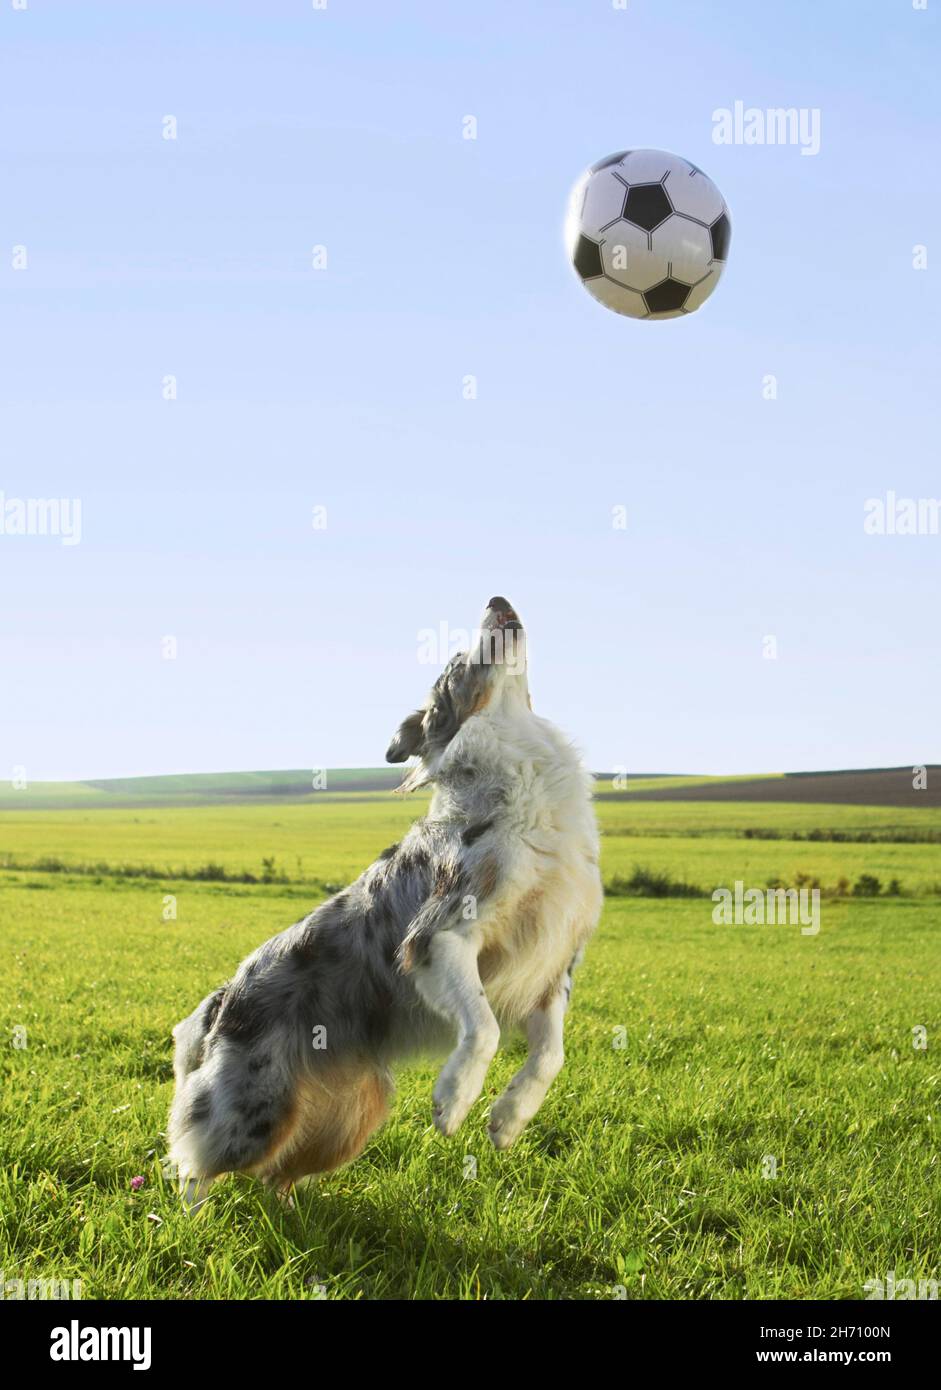 Pastore Australiano. Cane adulto su un prato, giocando con una palla. Germania Foto Stock